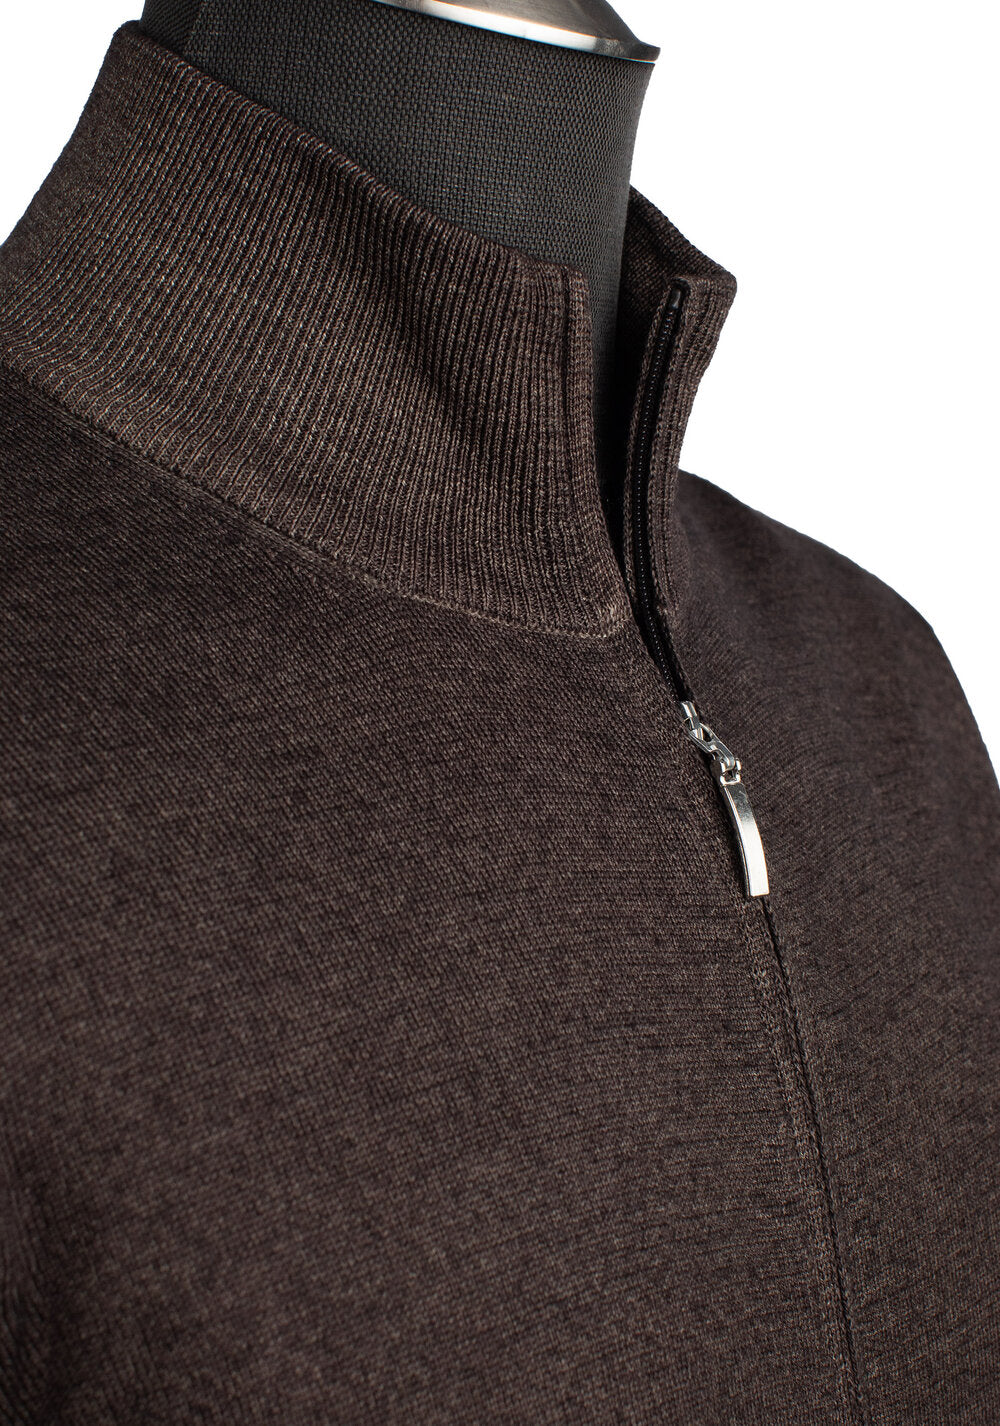 Gran Sasso Merino Wool Full-Zip Sweater in Chocolate Brown